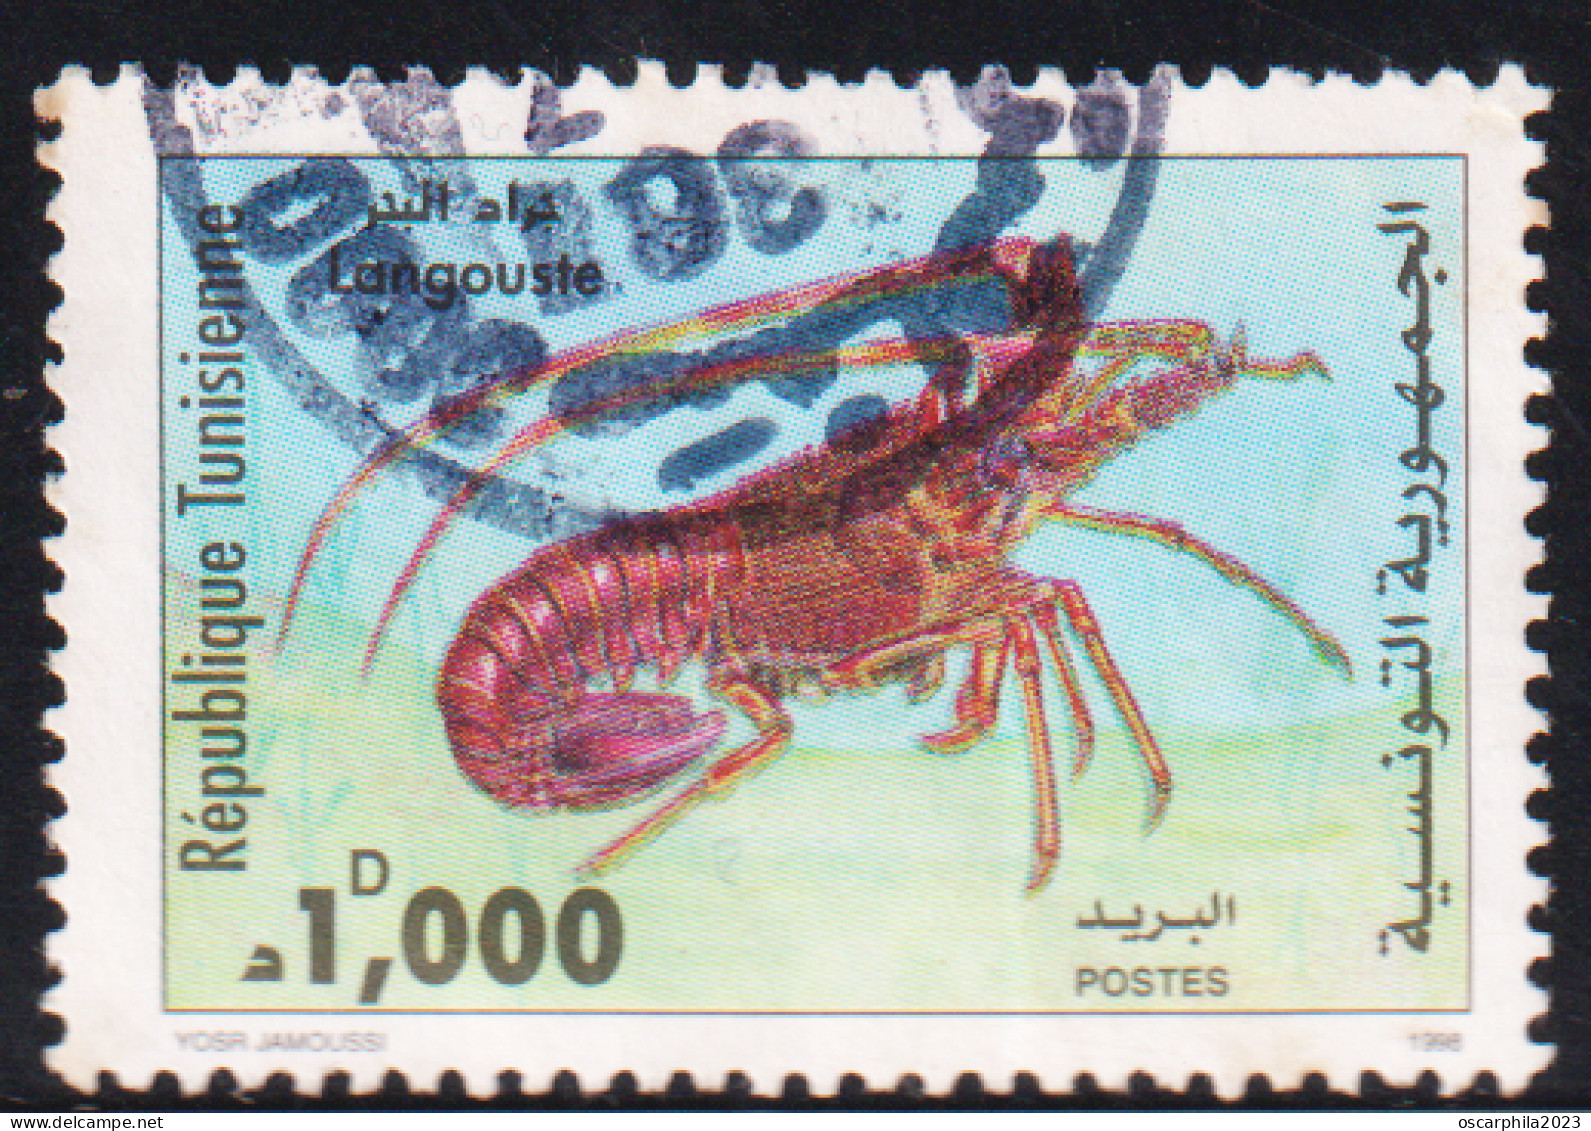 1998 - Tunisie - Y & T 1336   - Les Crustacés : Langouste  - Obli - Schalentiere